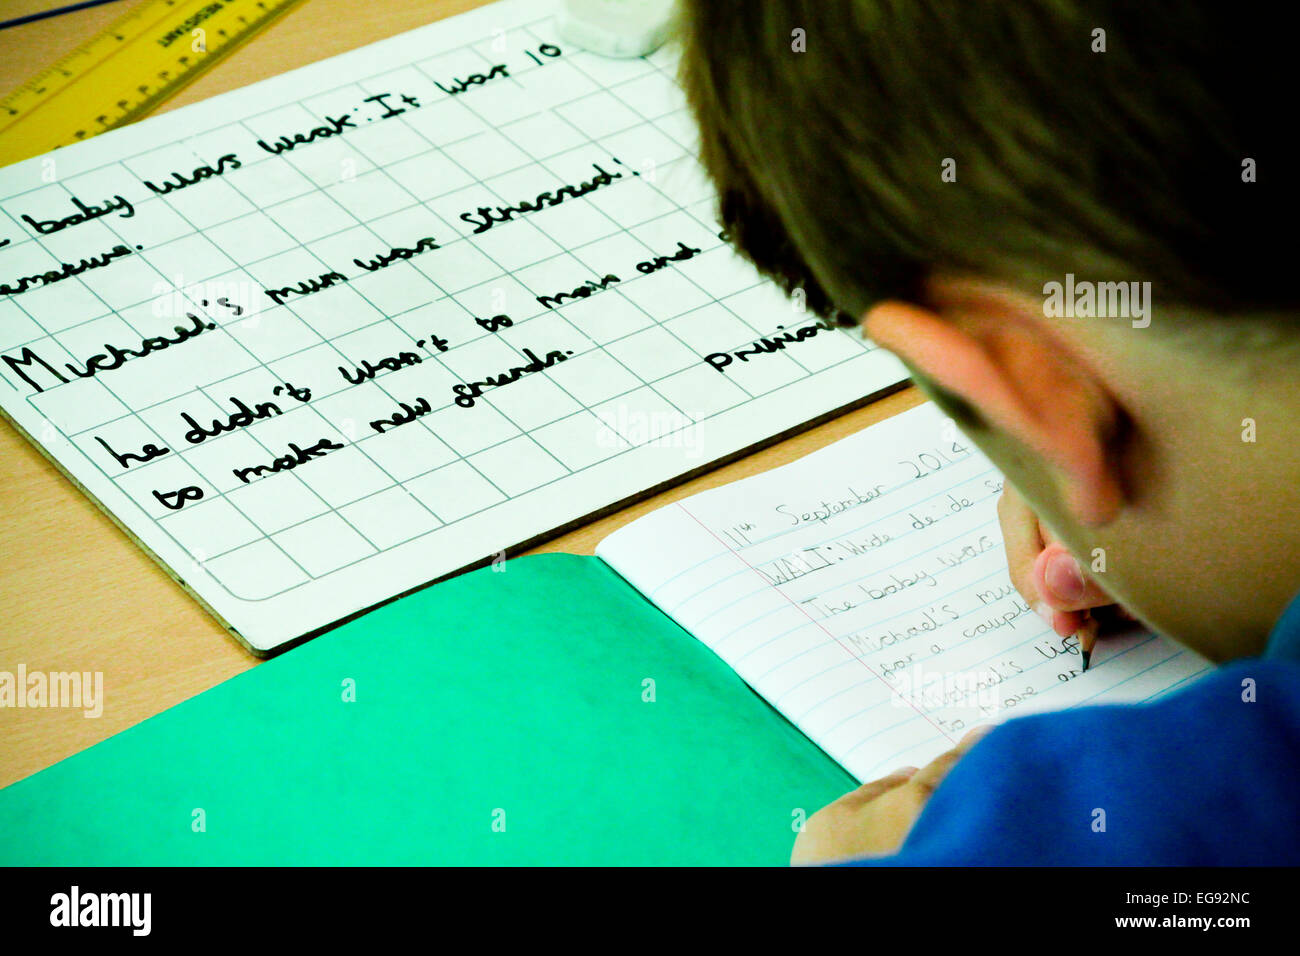 École primaire écrit avec un crayon pendant une leçon Banque D'Images